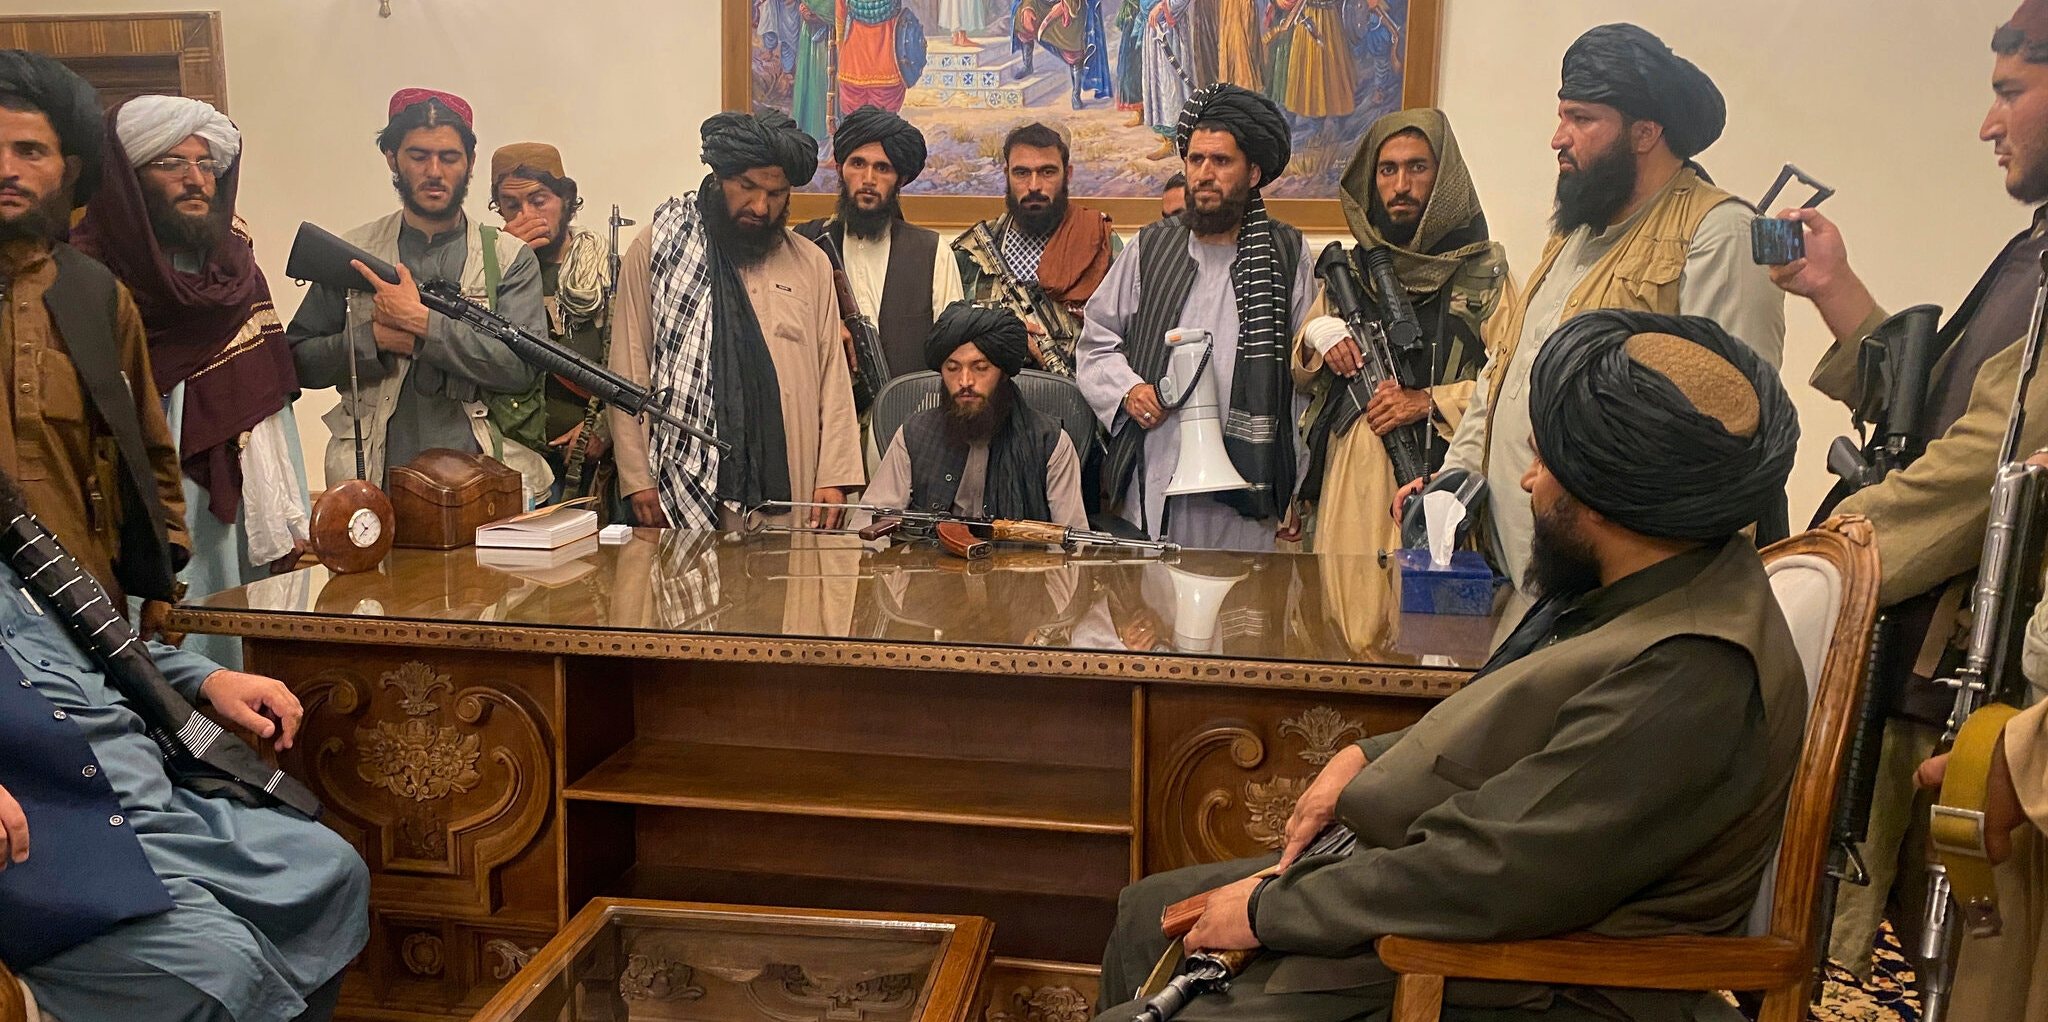 Os combatentes talibãs invadiram o palácio presidencial de Cabul e assumiram o poder — mas ainda há dúvidas sobre o regime que pretendem implementar e sobre a credibilidade das suas promessas